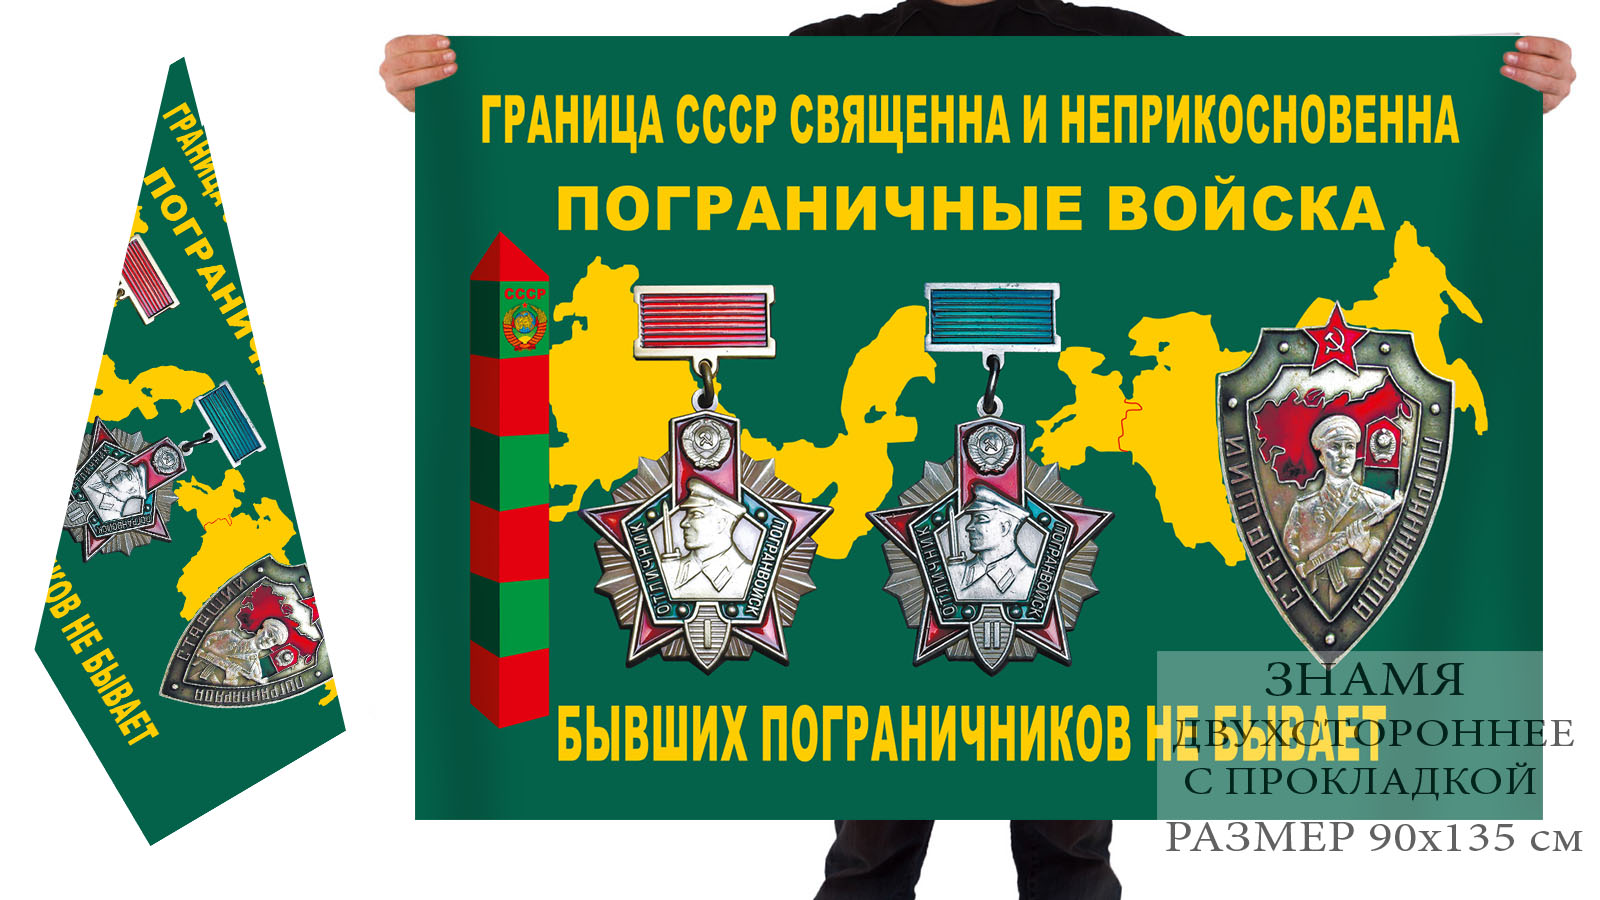 Двусторонний флаг ветеранов пограничных войск СССР (Граница - священна и неприкосновенна)